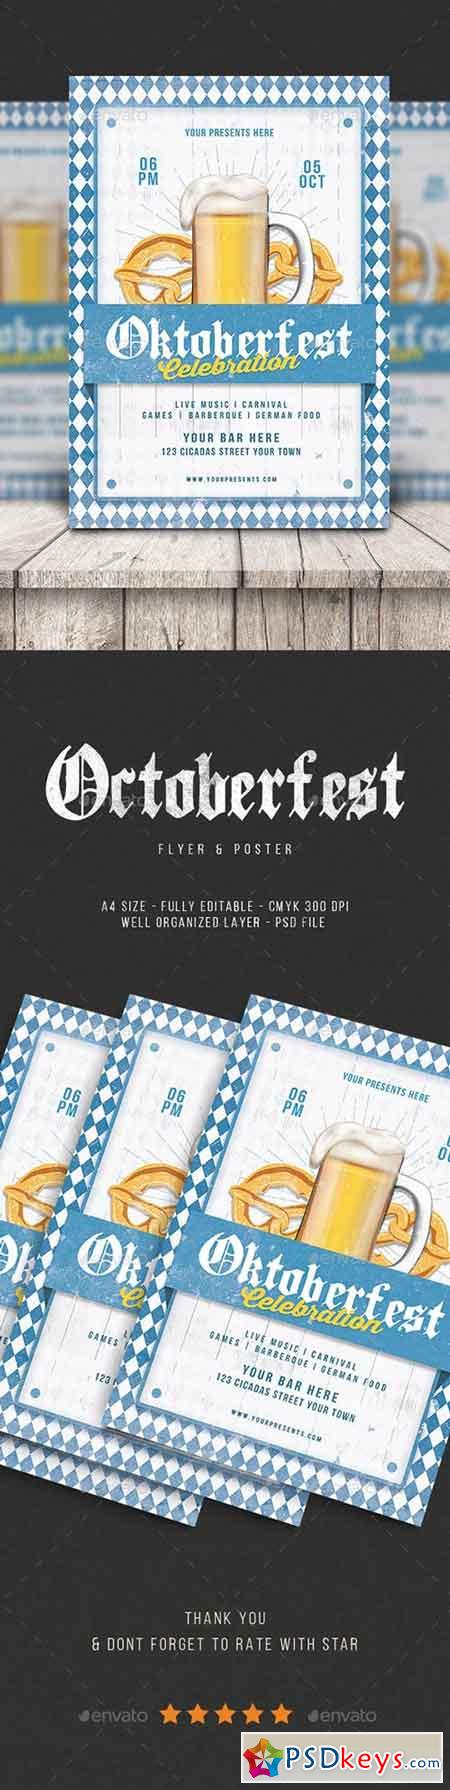 Oktoberfest Flyer vol.4 20650548